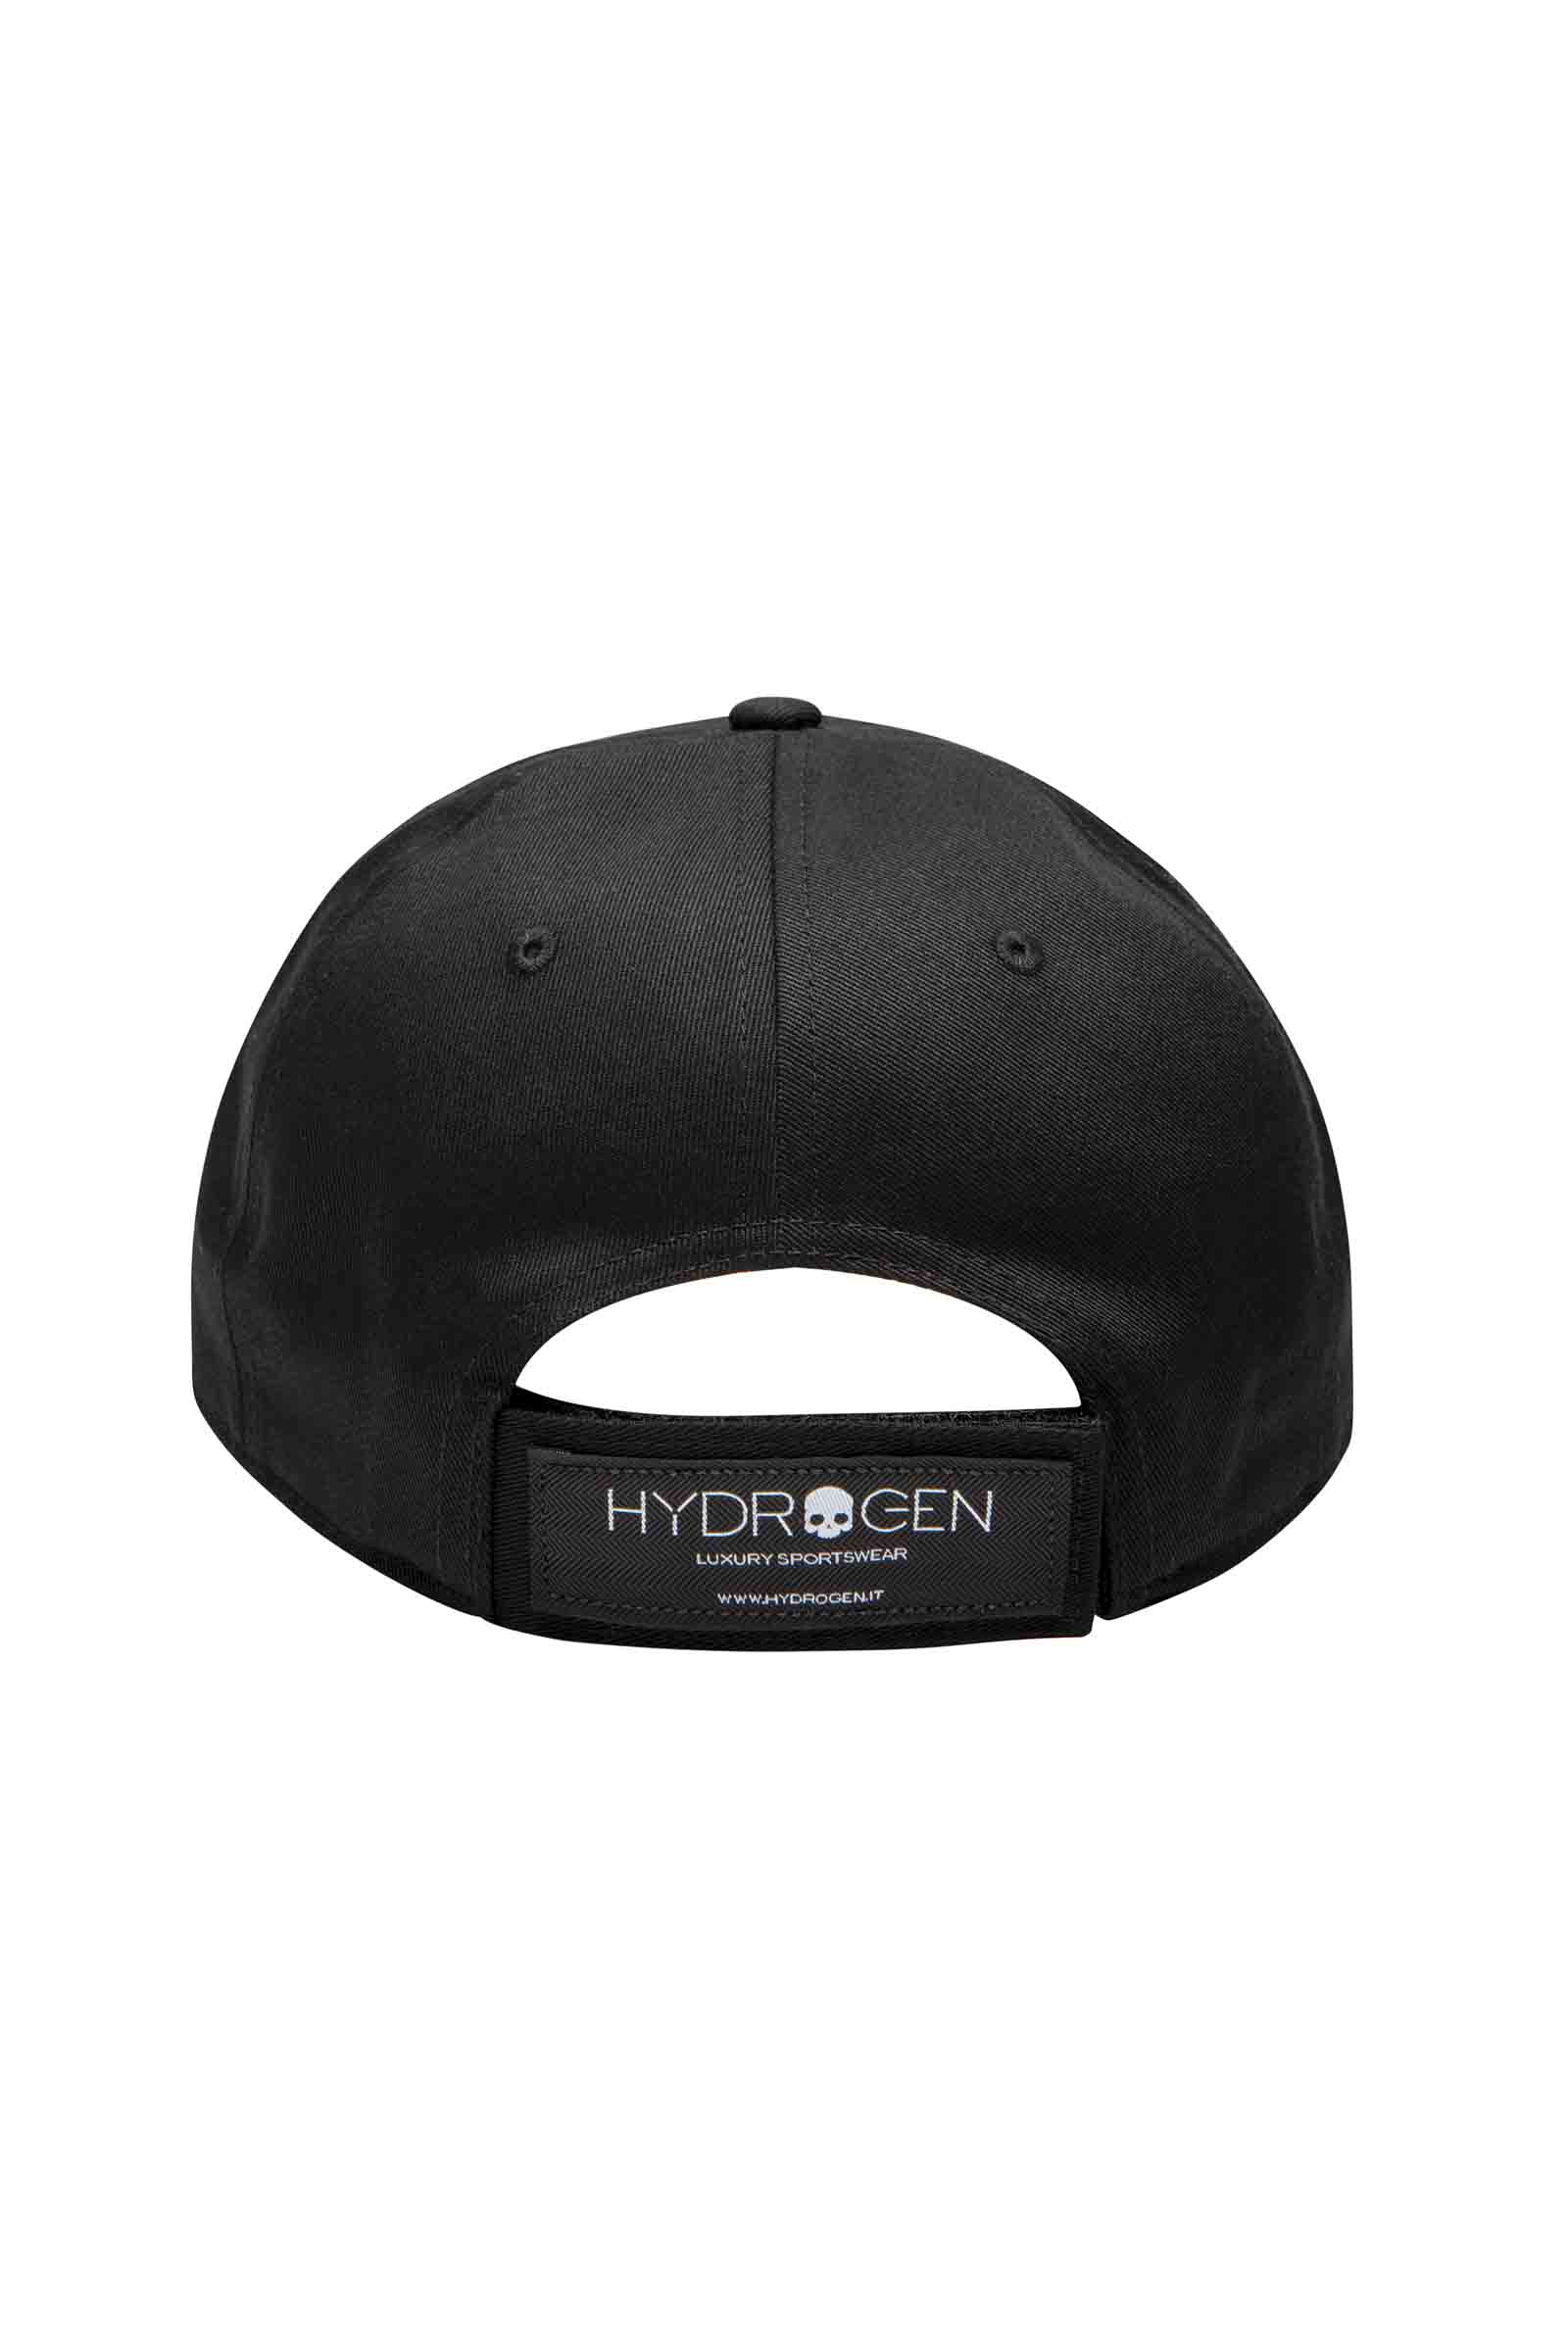 CAP - BLACK,SILVER - Hydrogen - Luxury Sportwear